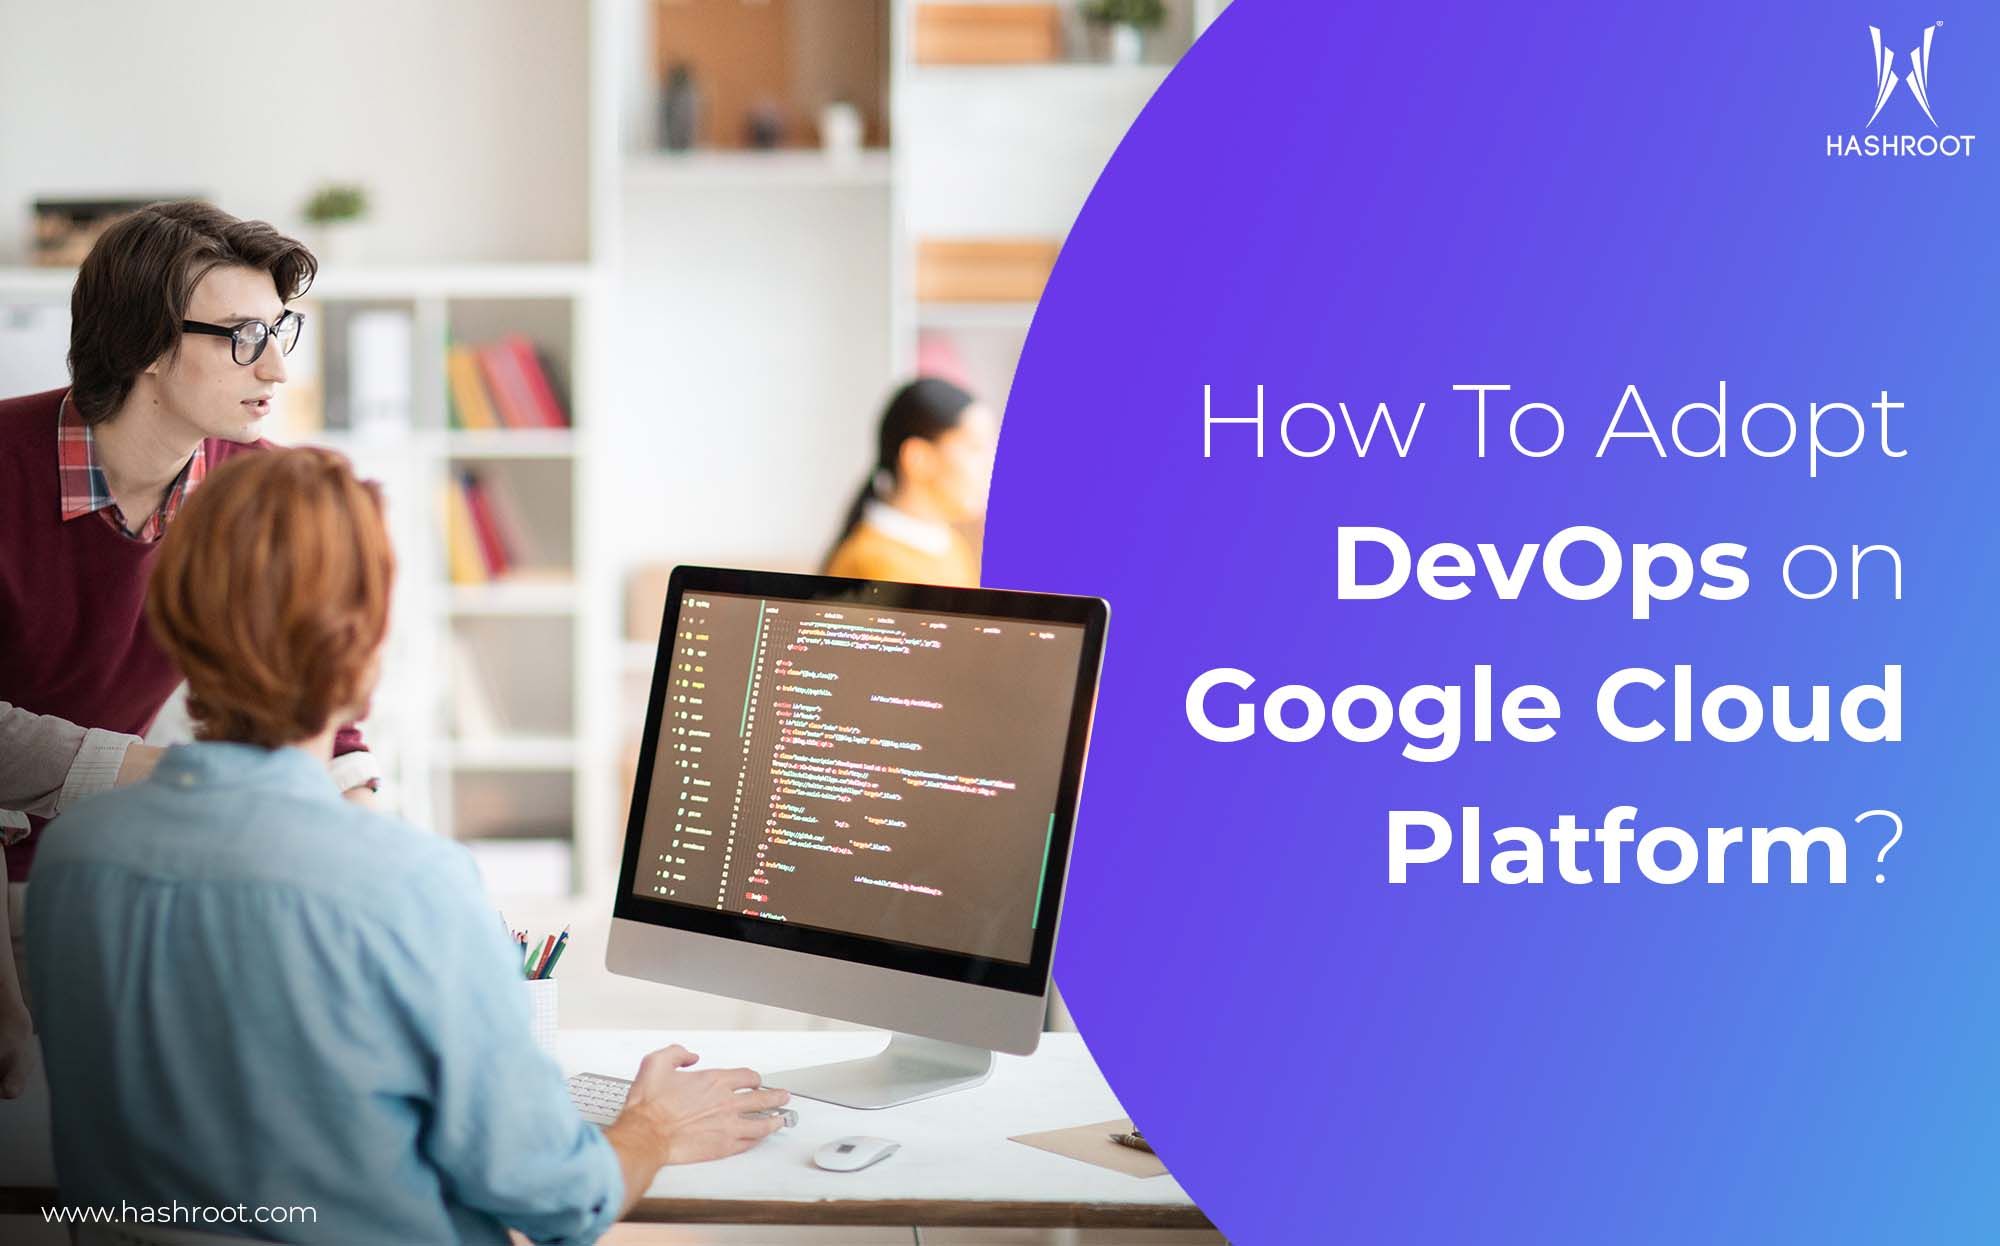 How To Adopt DevOps on Google Cloud Platform?